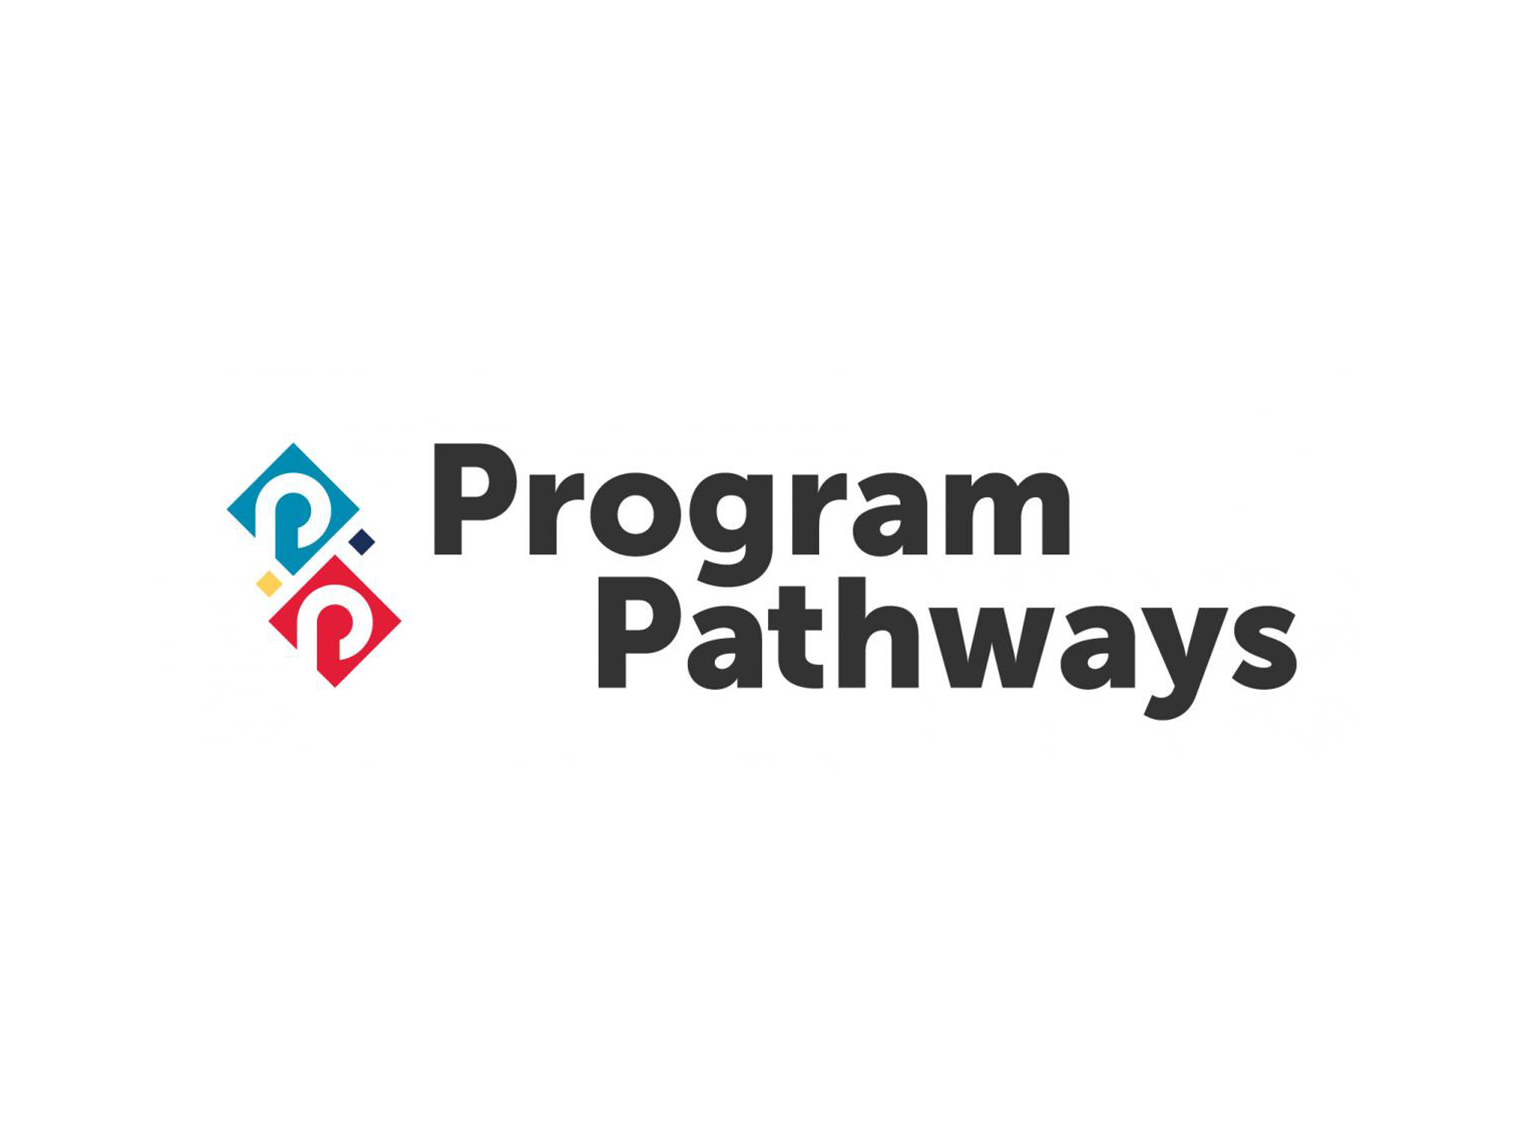 Program Pathways